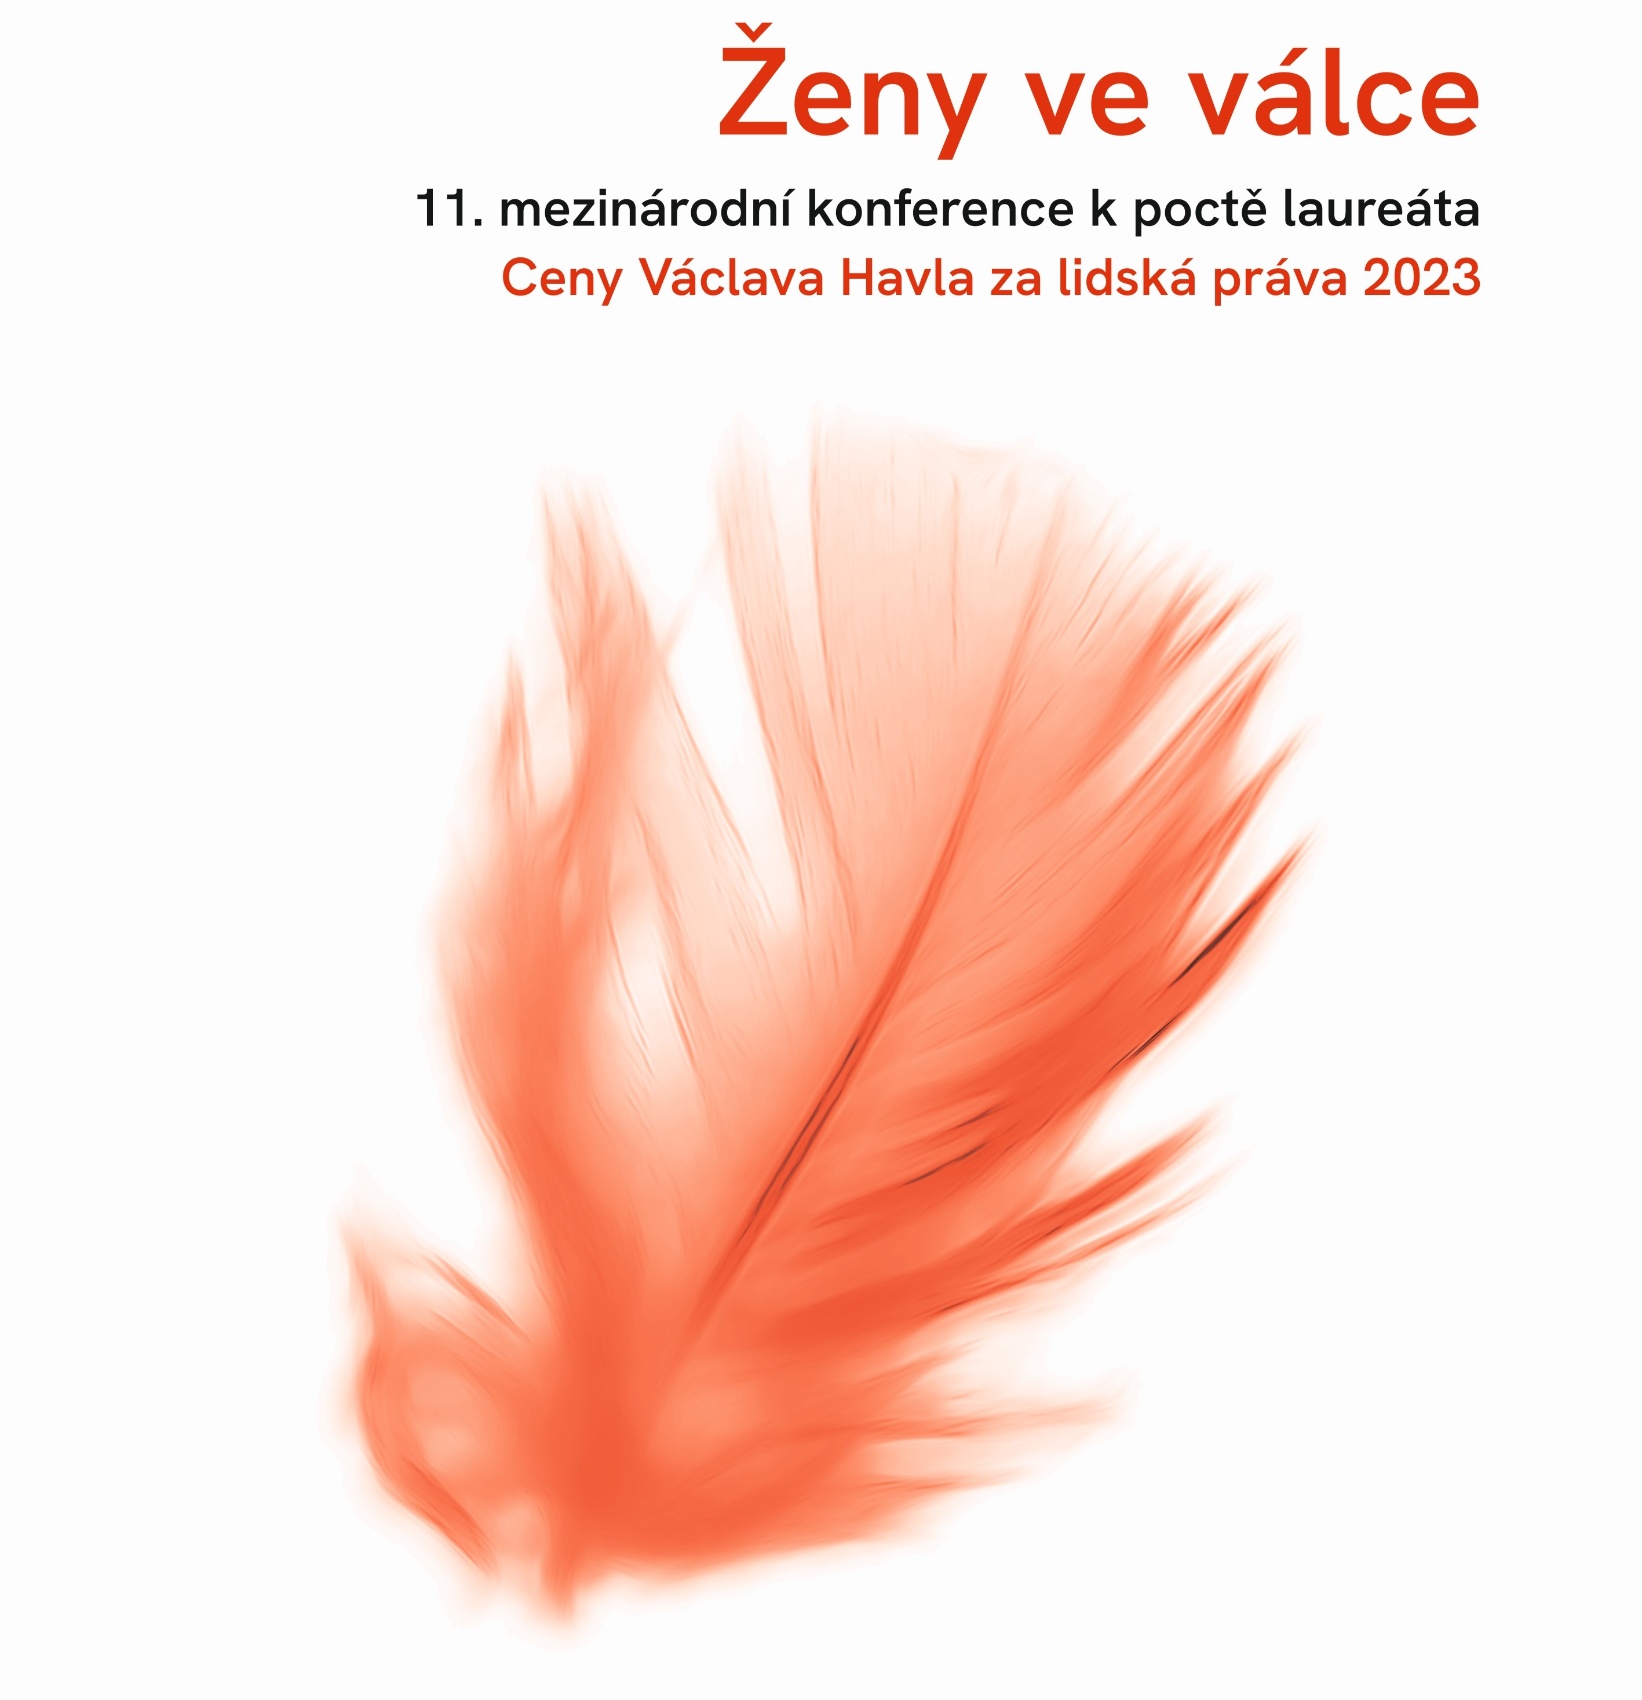 11. mezinárodní konference k poctě laureáta Ceny Václava Havla za lidská práva 2023